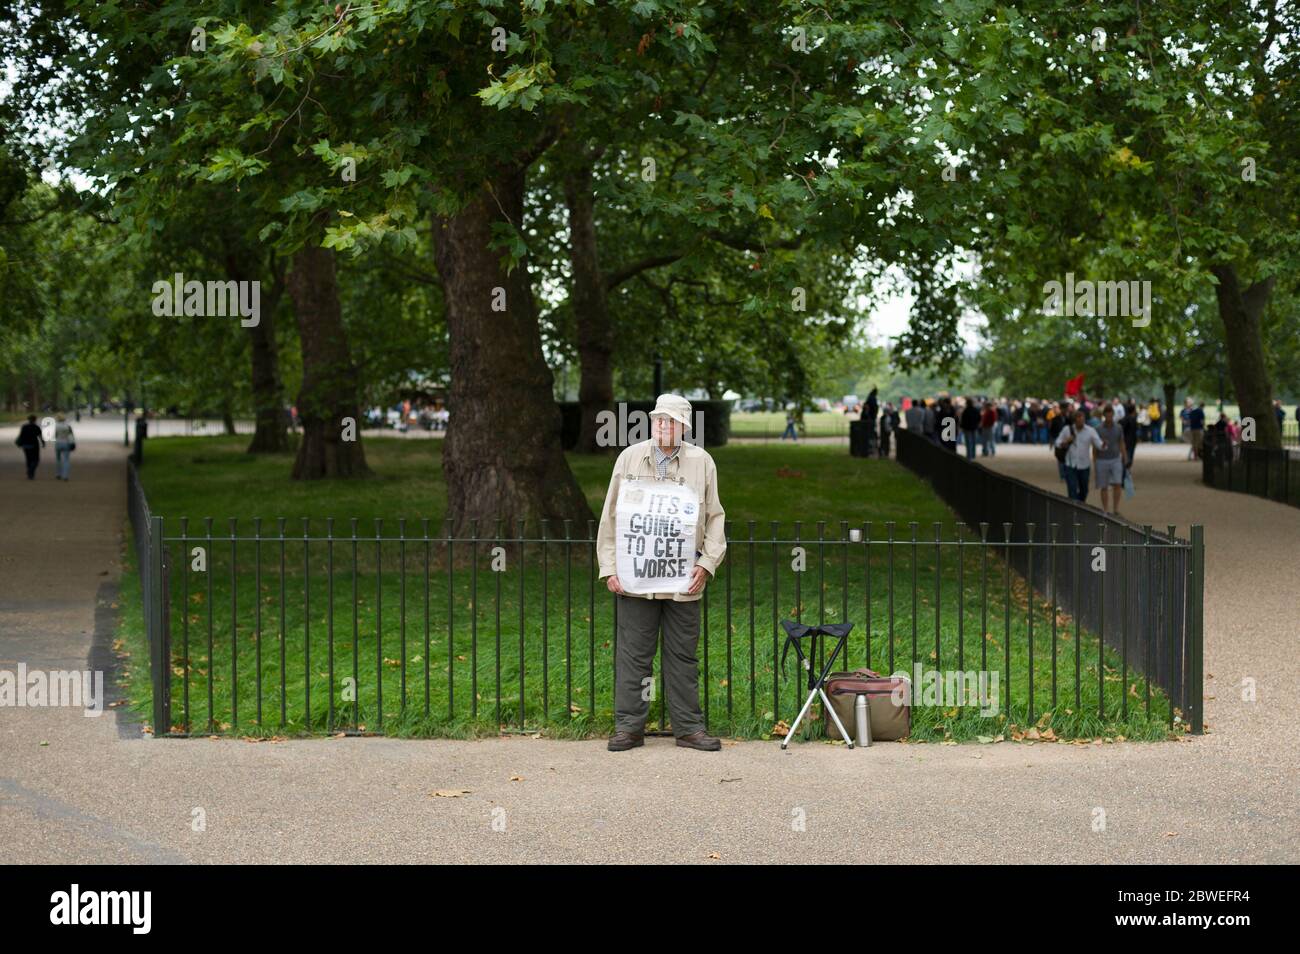 Un orador en Speakers' Corner que está situado cerca de Marble Arch en la esquina noreste de Hyde Park, Londres. Speakers' Corner es un espacio abierto tradicional Foto de stock